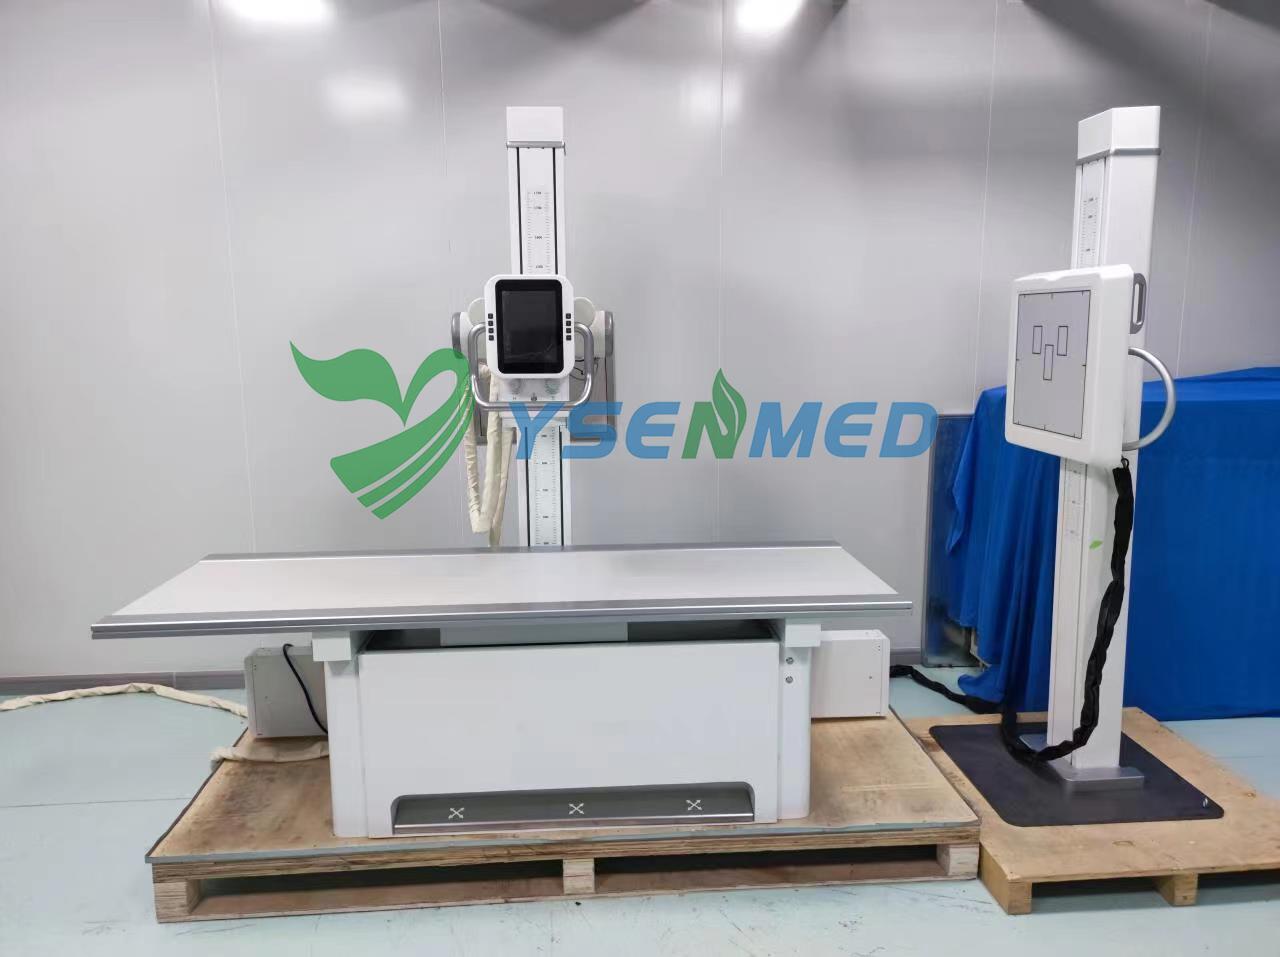 Sistema de raios X digital YSENMED 50kW 500mA YSX-iDR50 chega a um hospital na Tanzânia.